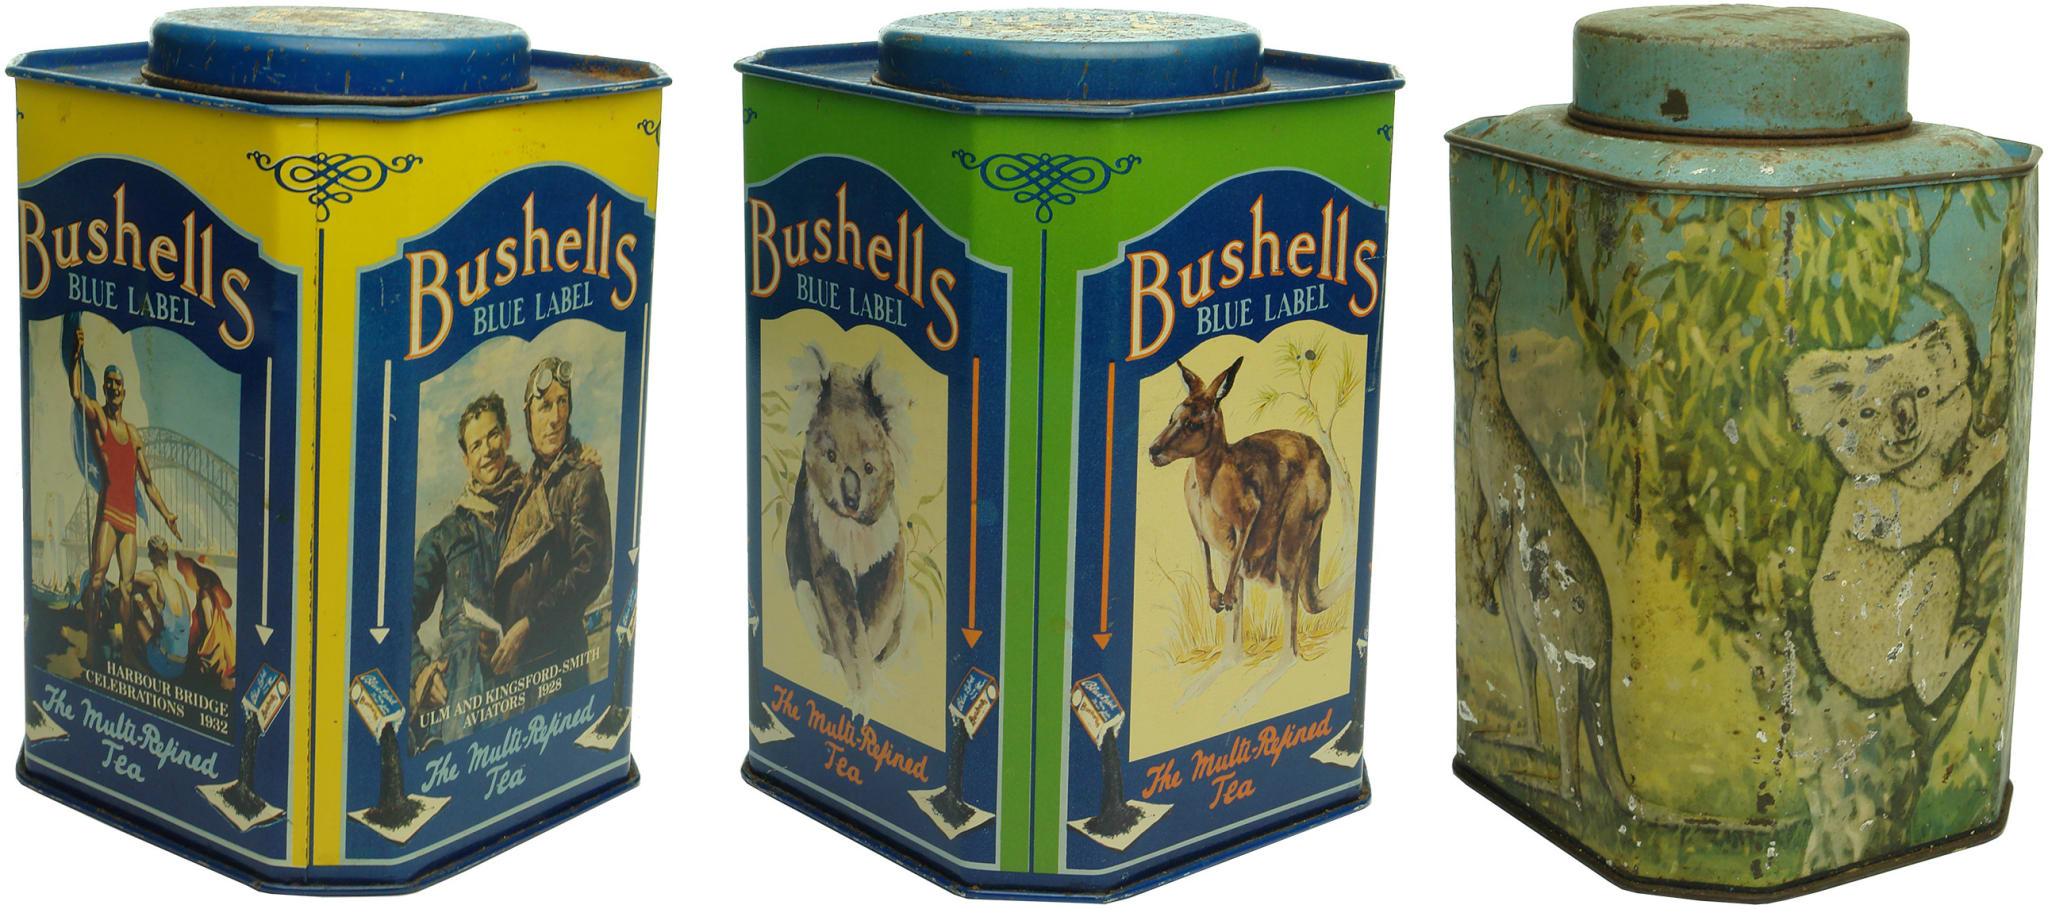 Bushells Tea Tins